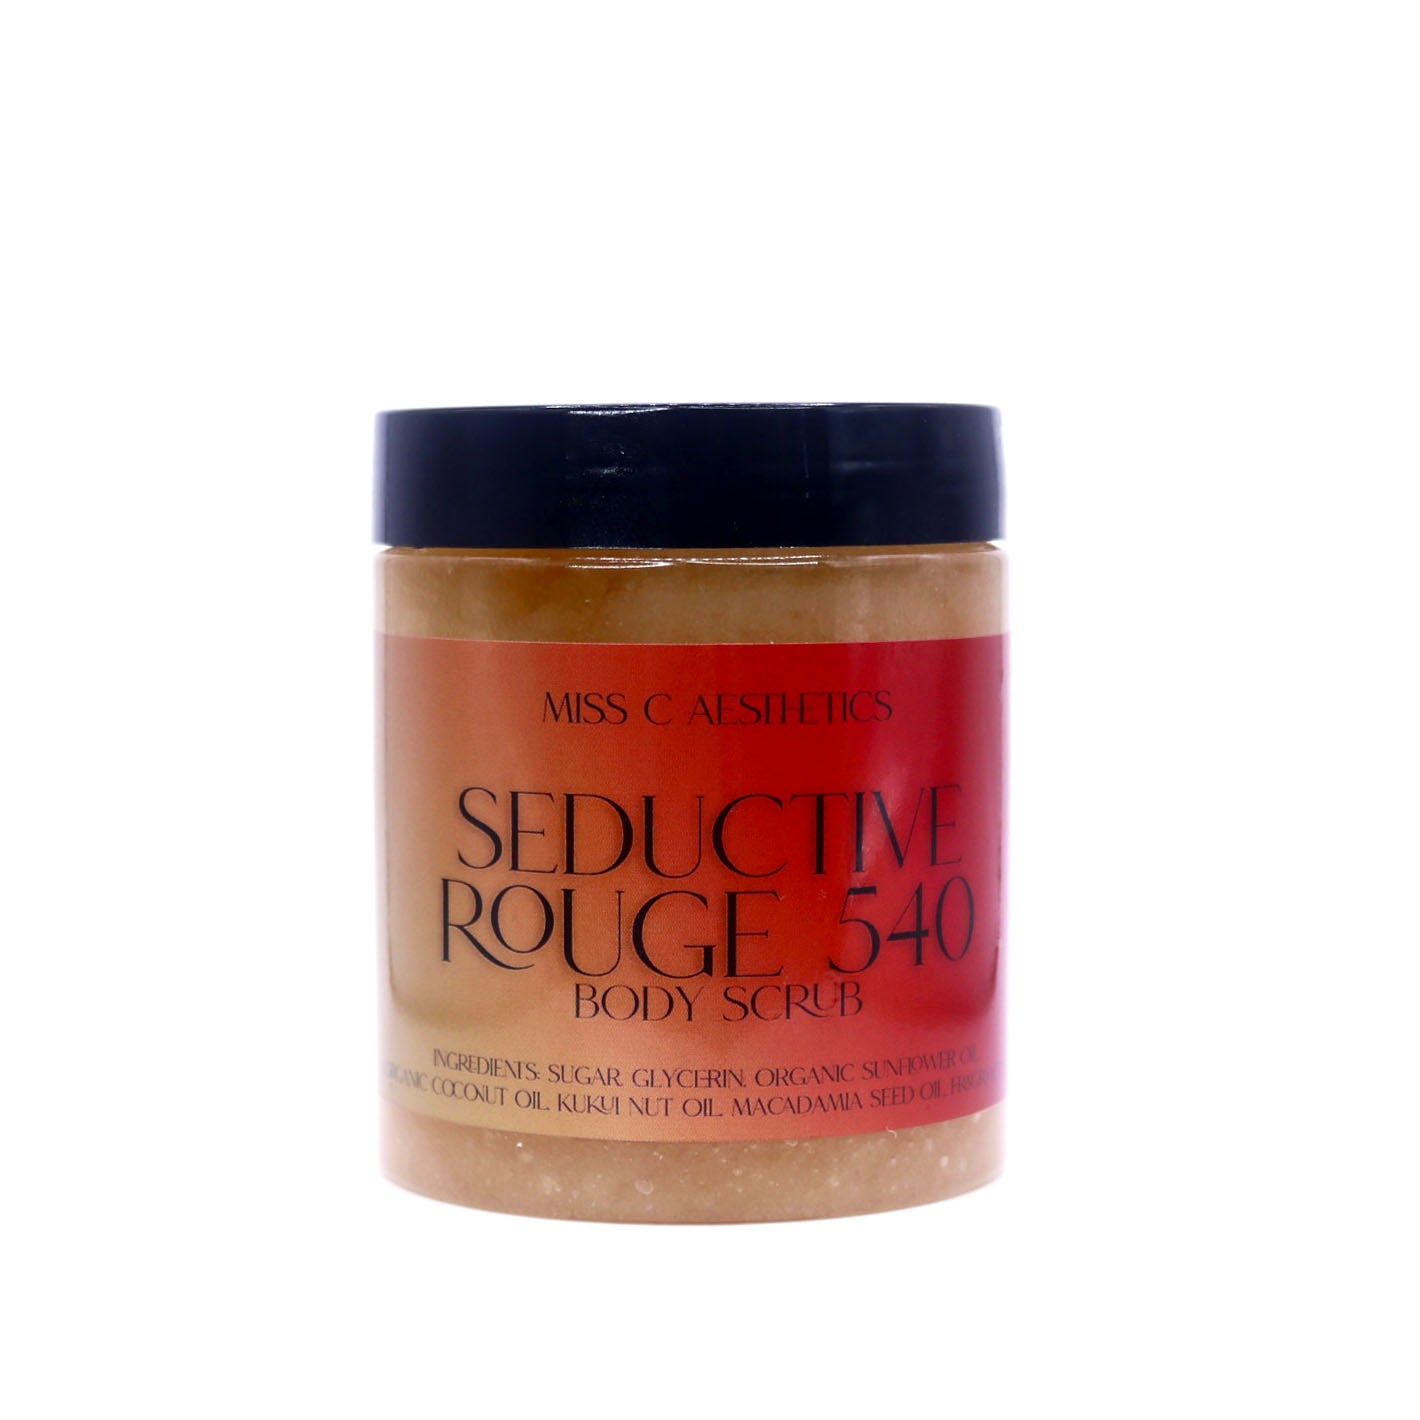 "Seductive Rouge 540" Exfoliating Sugar Scrub